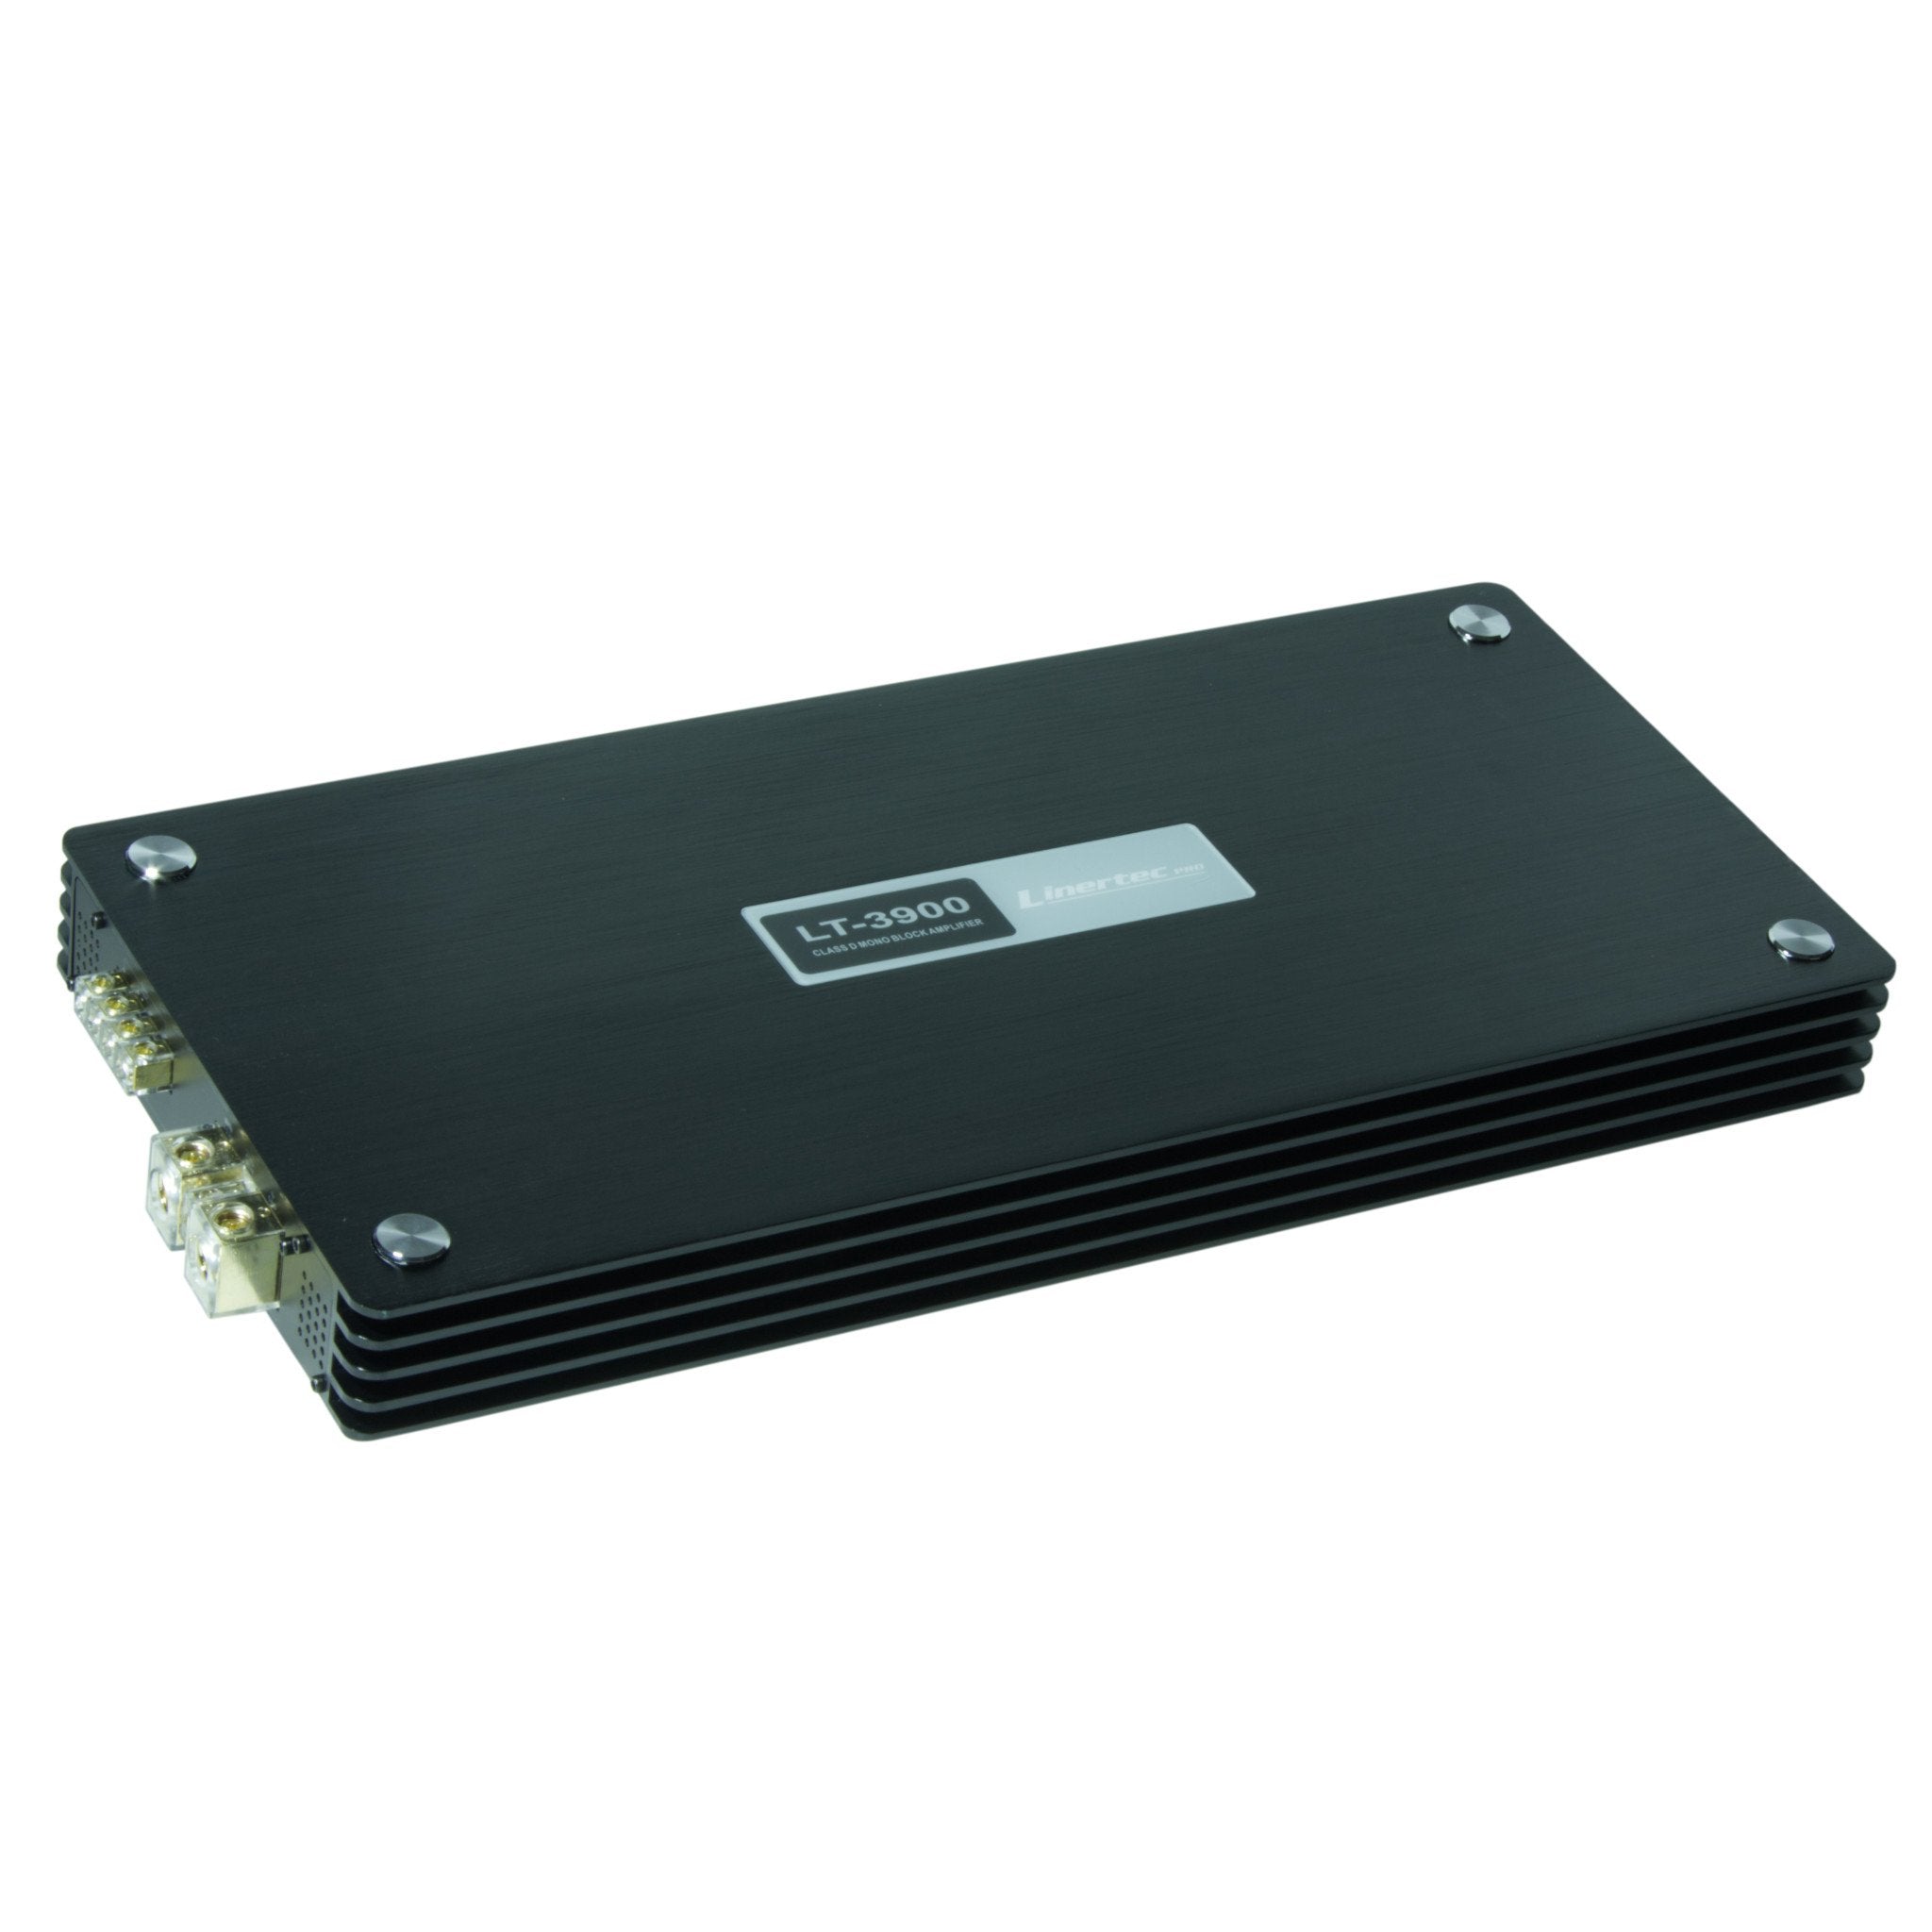 Linertec LT-3900 black car audio monoblock amplifier angle view